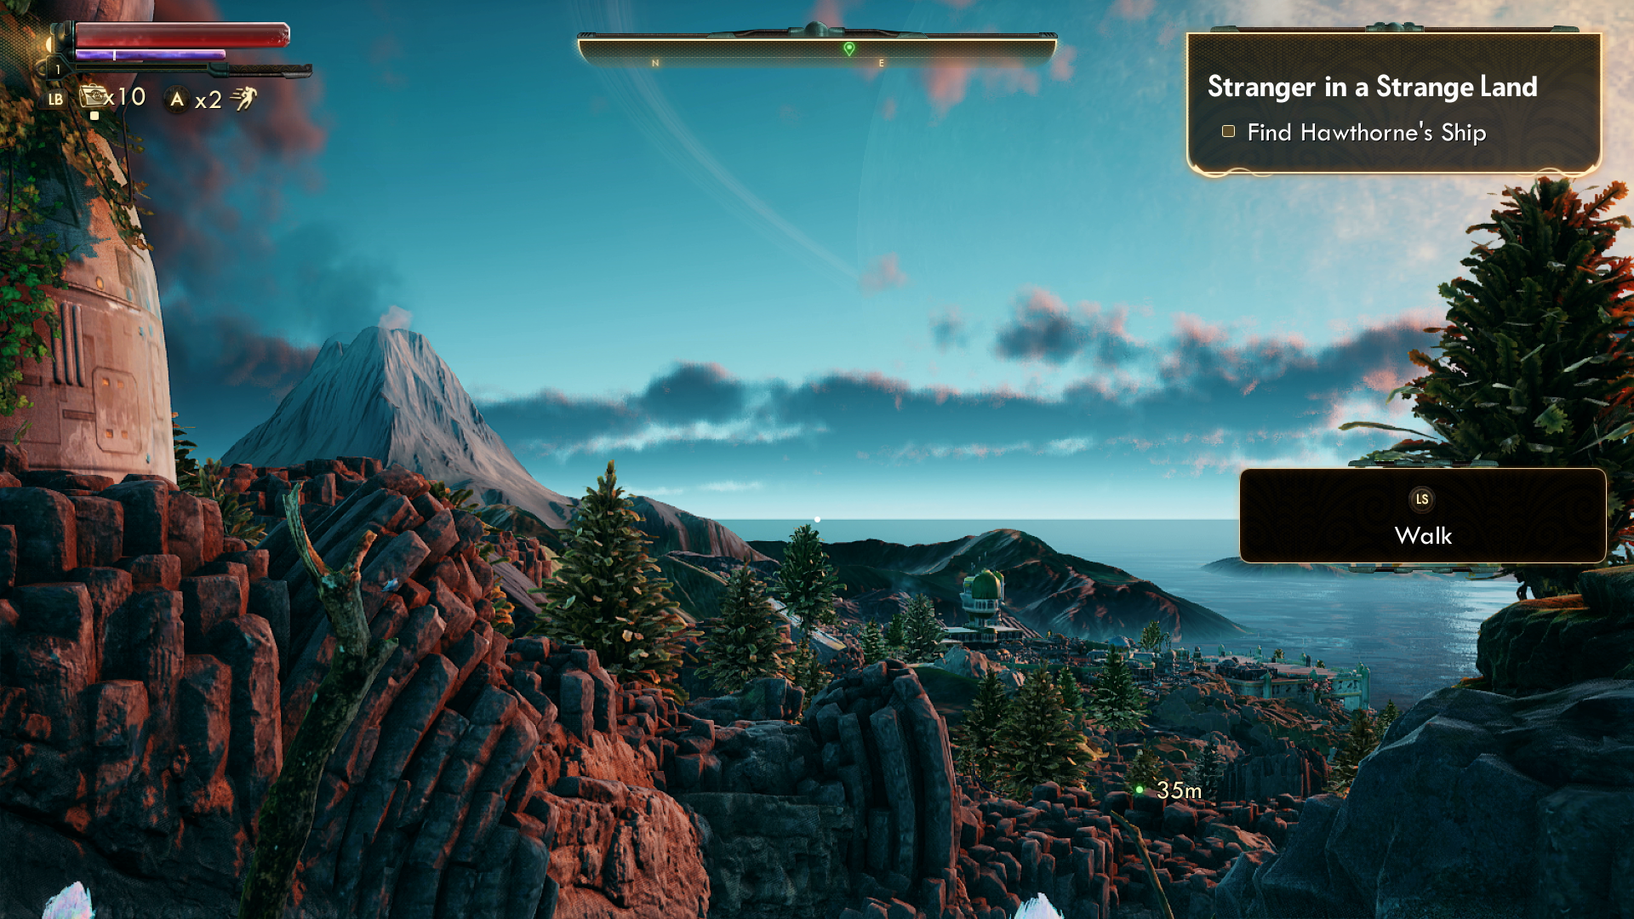 ゲーム「アウターワールド」で島を探索するプレイヤー。 体力バー、ナビゲーション バー、クエスト目標、字幕はすべて、暗い背景に対して強いコントラストを持っているため、プレイヤーにとってより見やすくなっています。